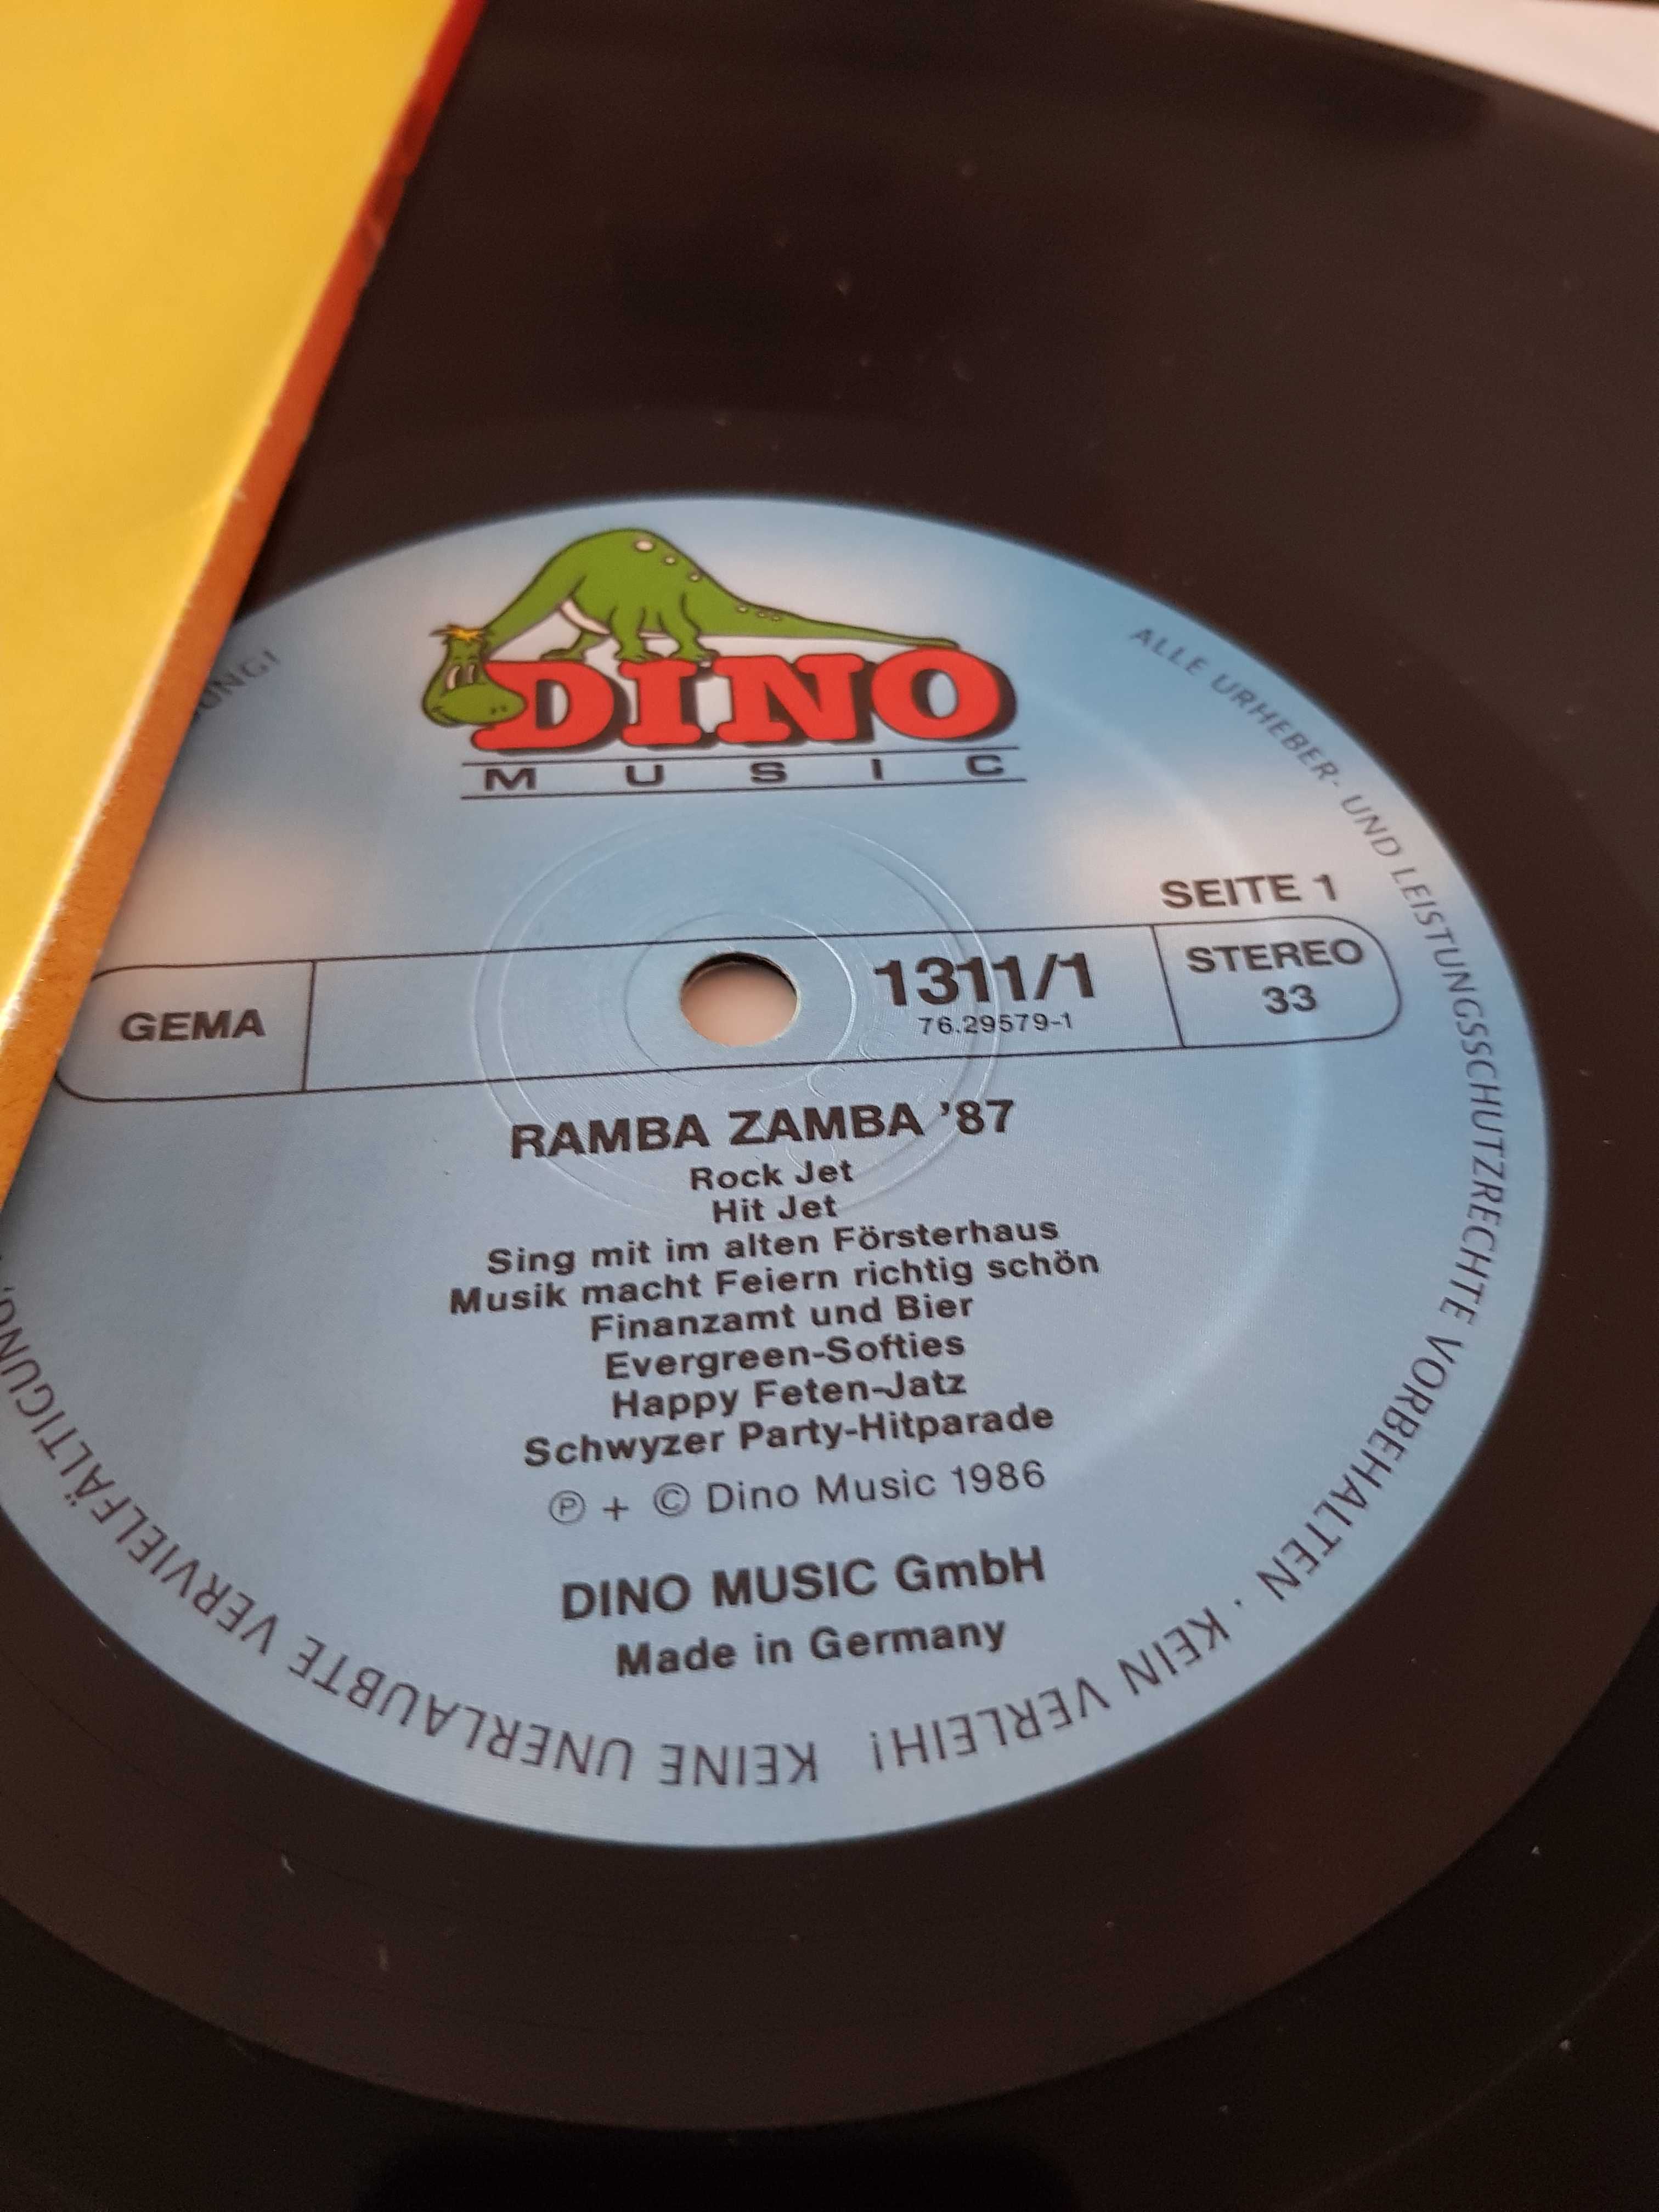 Rudi Ramba Und Seine Party-Tiger – Ramba Zamba '87 2xLP*3039